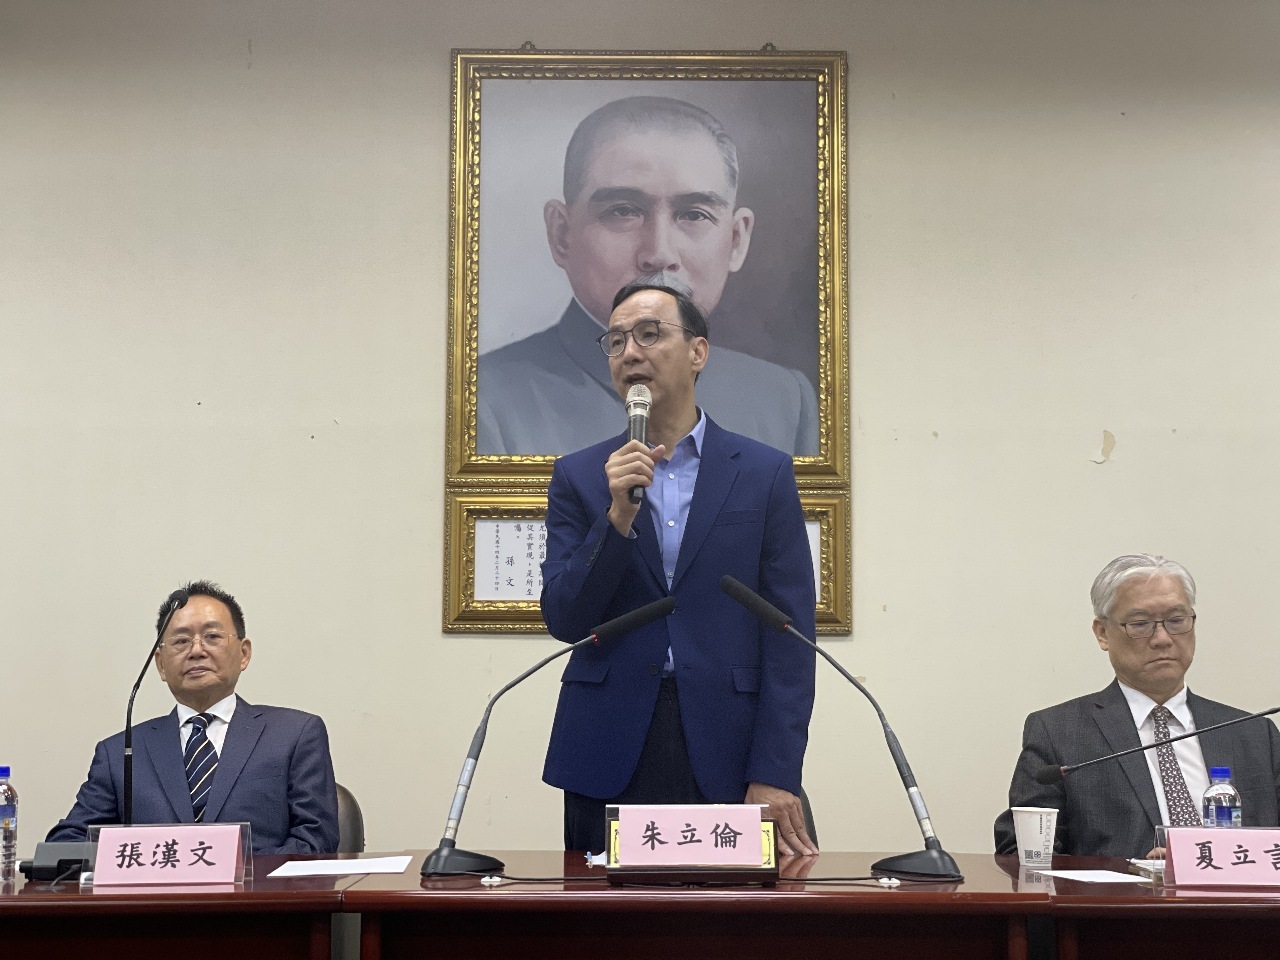 Eric Chu: KMT Harap Dialog Pertukaran Lintas Selat Bukan Perlawanan Mencari Musuh